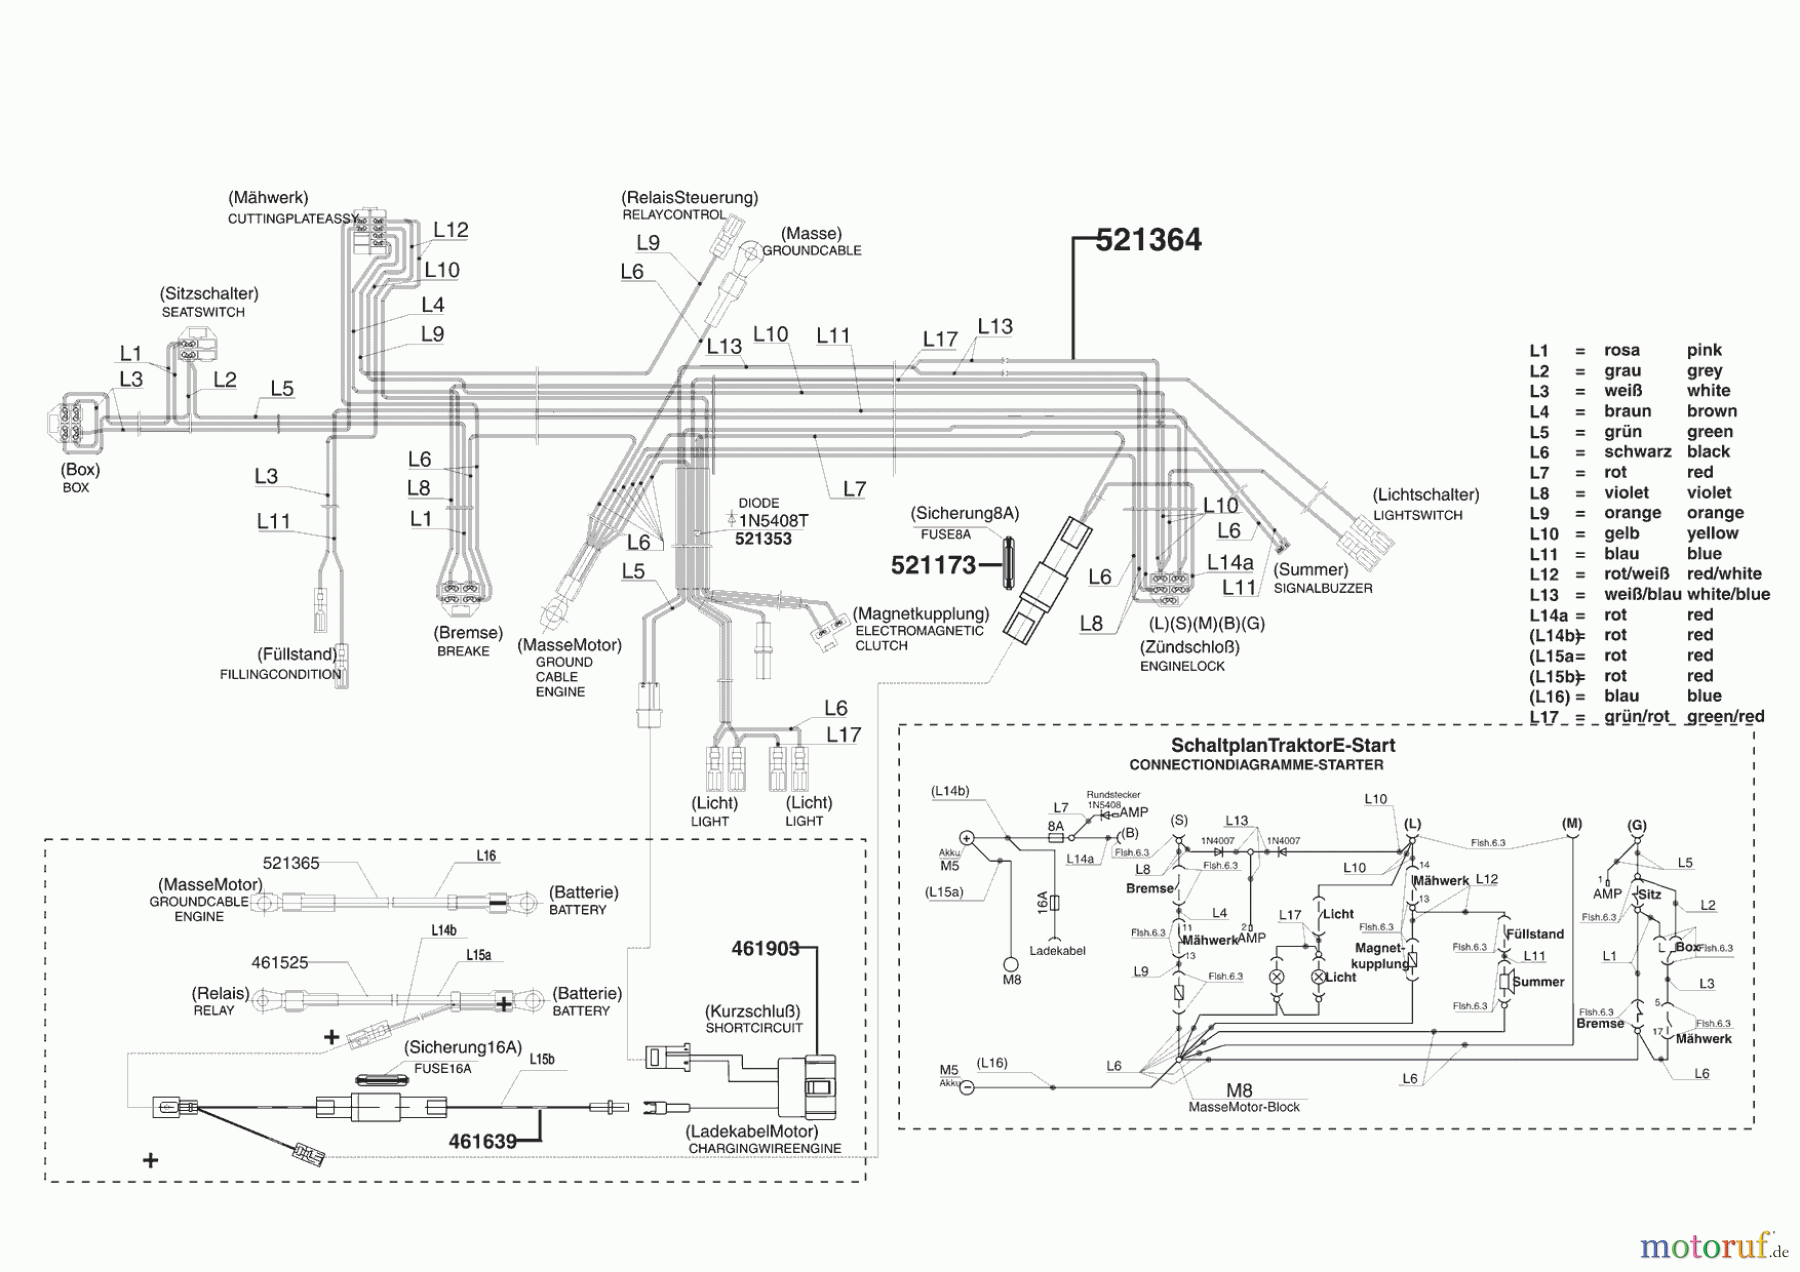  Powerline Gartentechnik Rasentraktor T 16/102 SP HD-H  11/2006 Seite 8